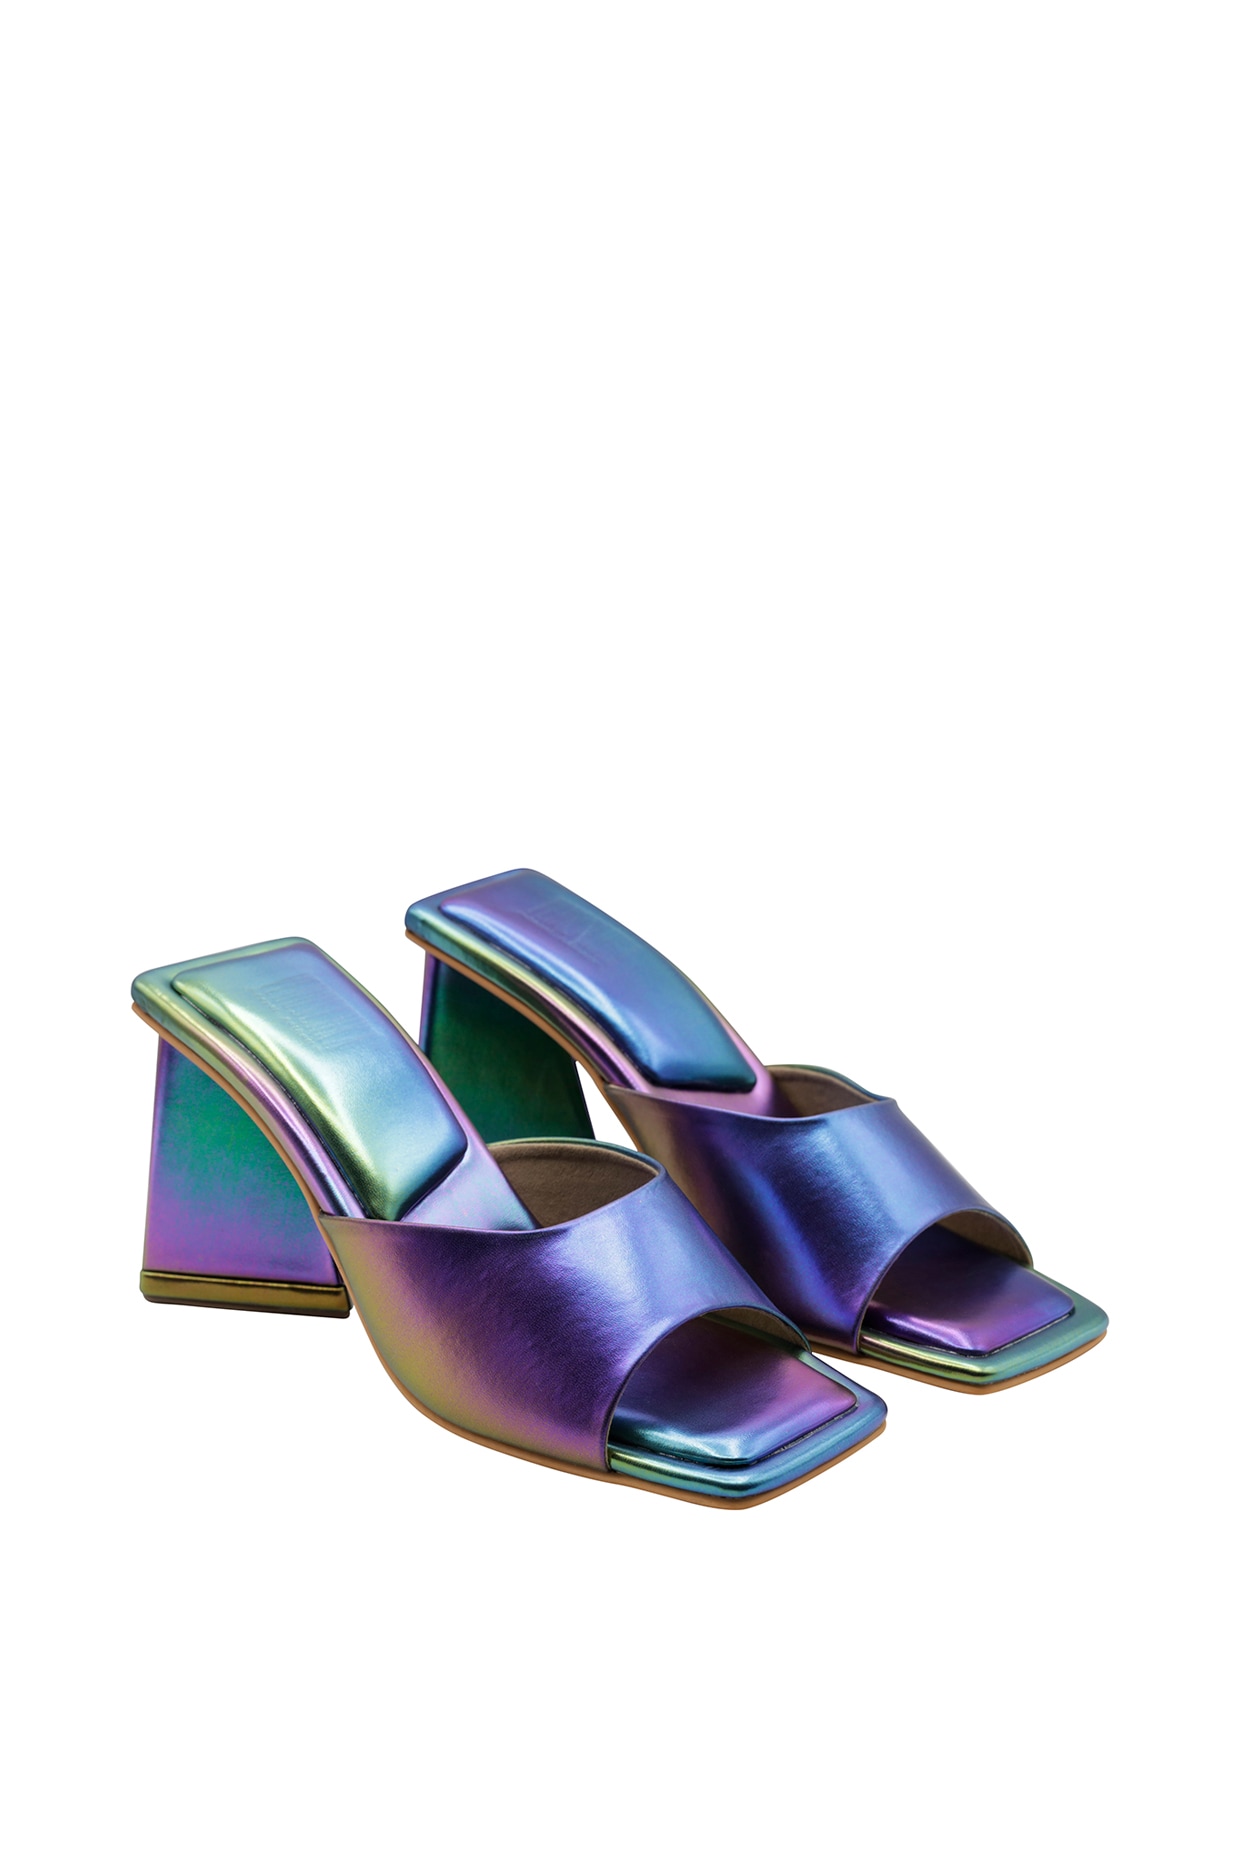 Kensie | Shoes | Kensie Kylee Vegan Rainbow Knot Sandals Size 8 | Poshmark